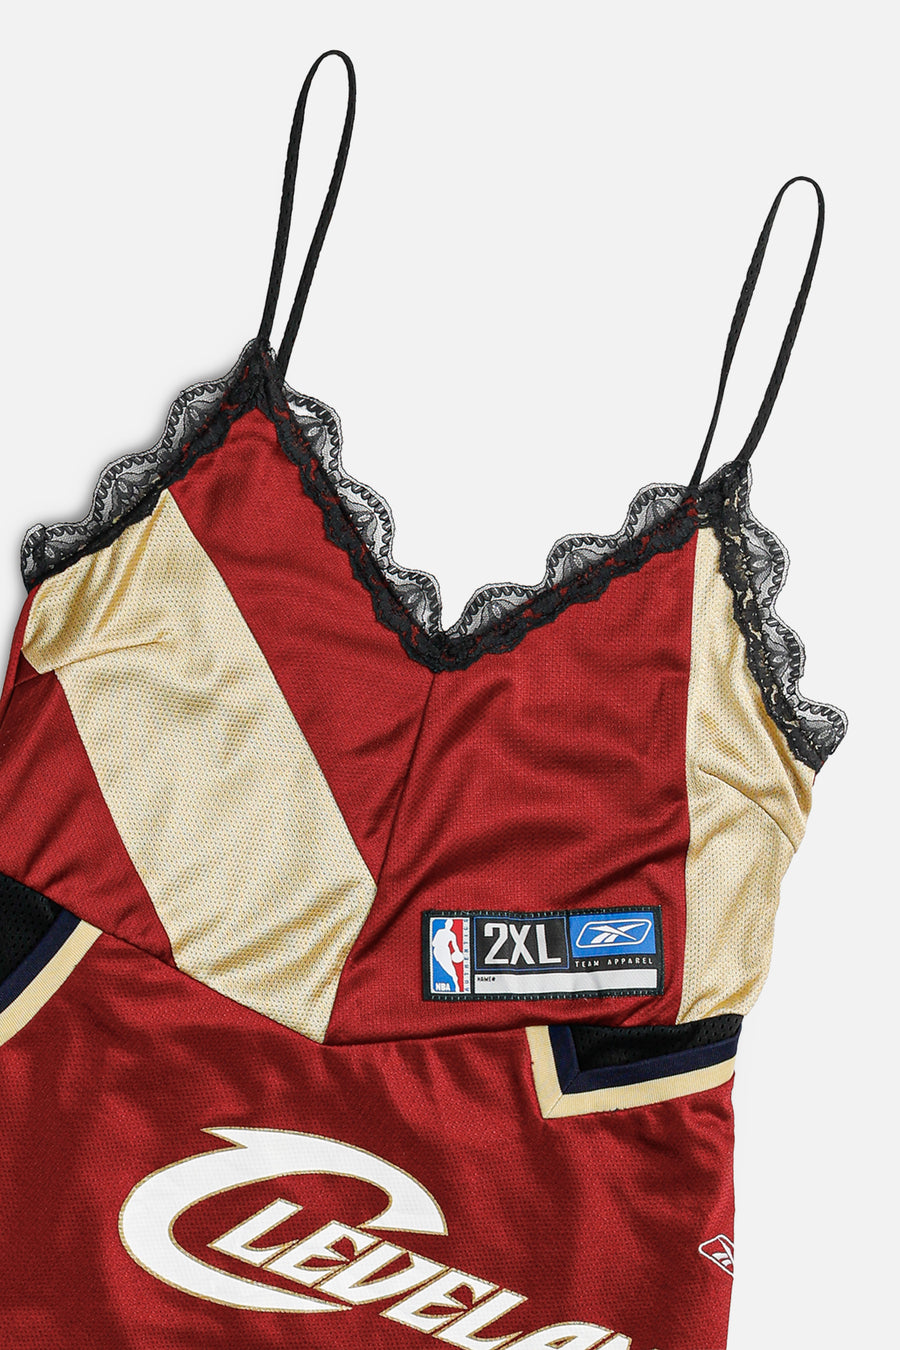 Rework NBA Lace Dress - M